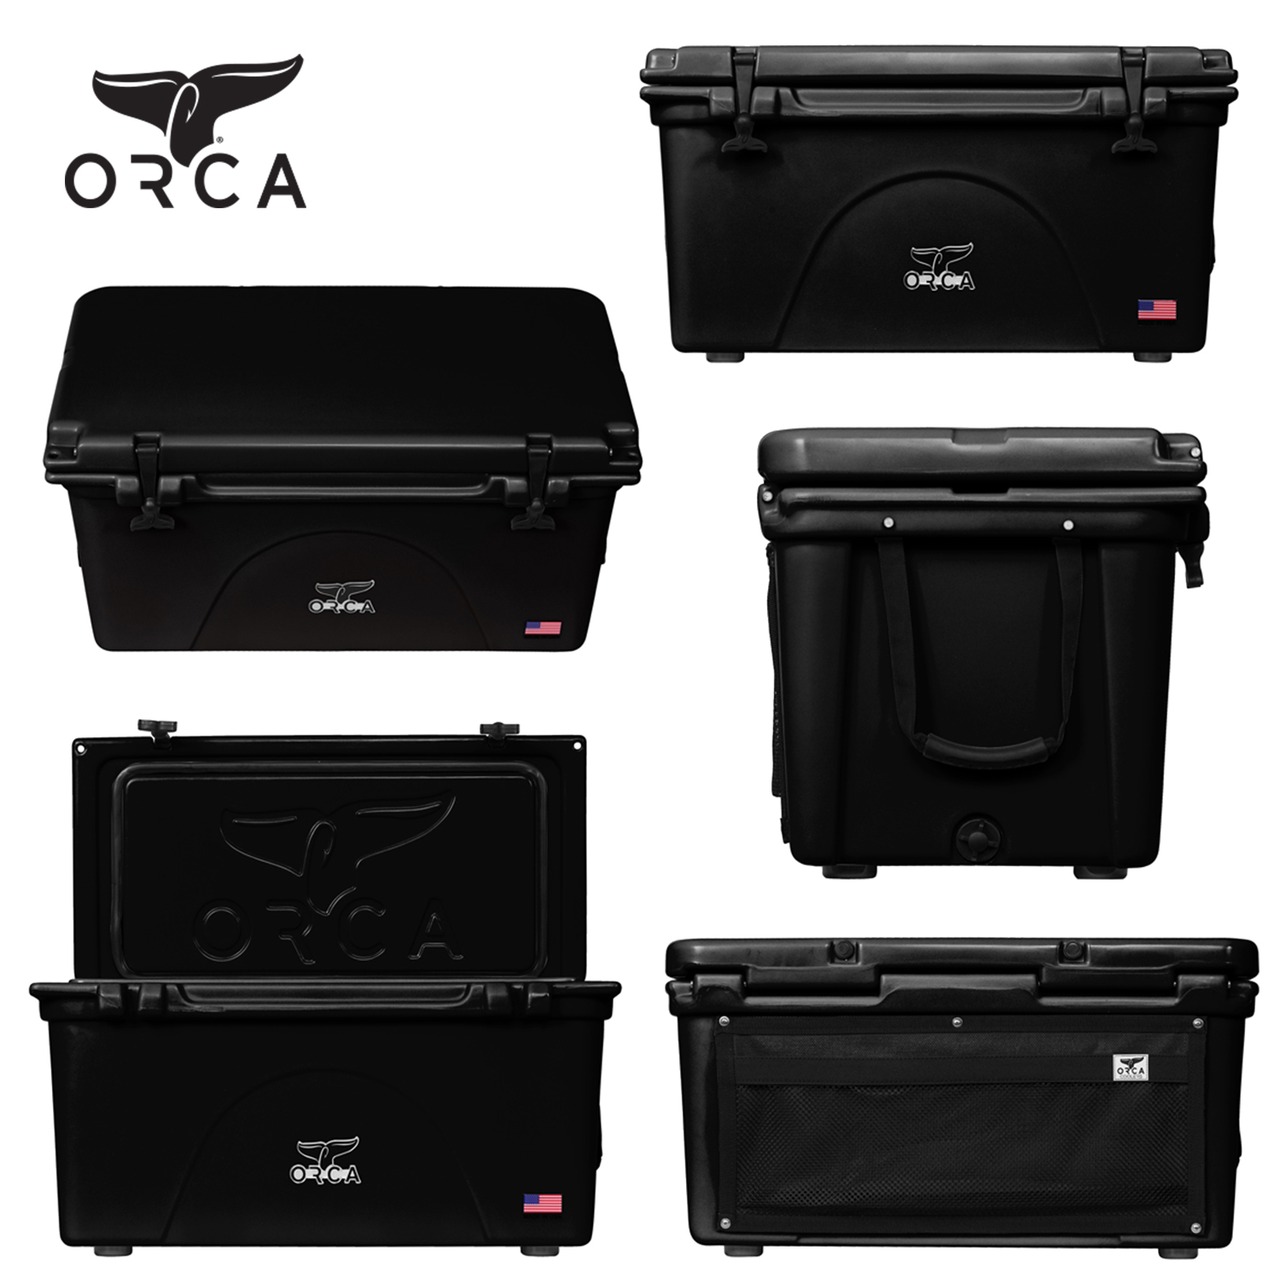 ORCA Coolers 75 Quart オルカ クーラー ボックス キャンプ用品 アウトドア キャンプ グッズ 保冷 クッキング ドリンク オルカクーラーズジャパン